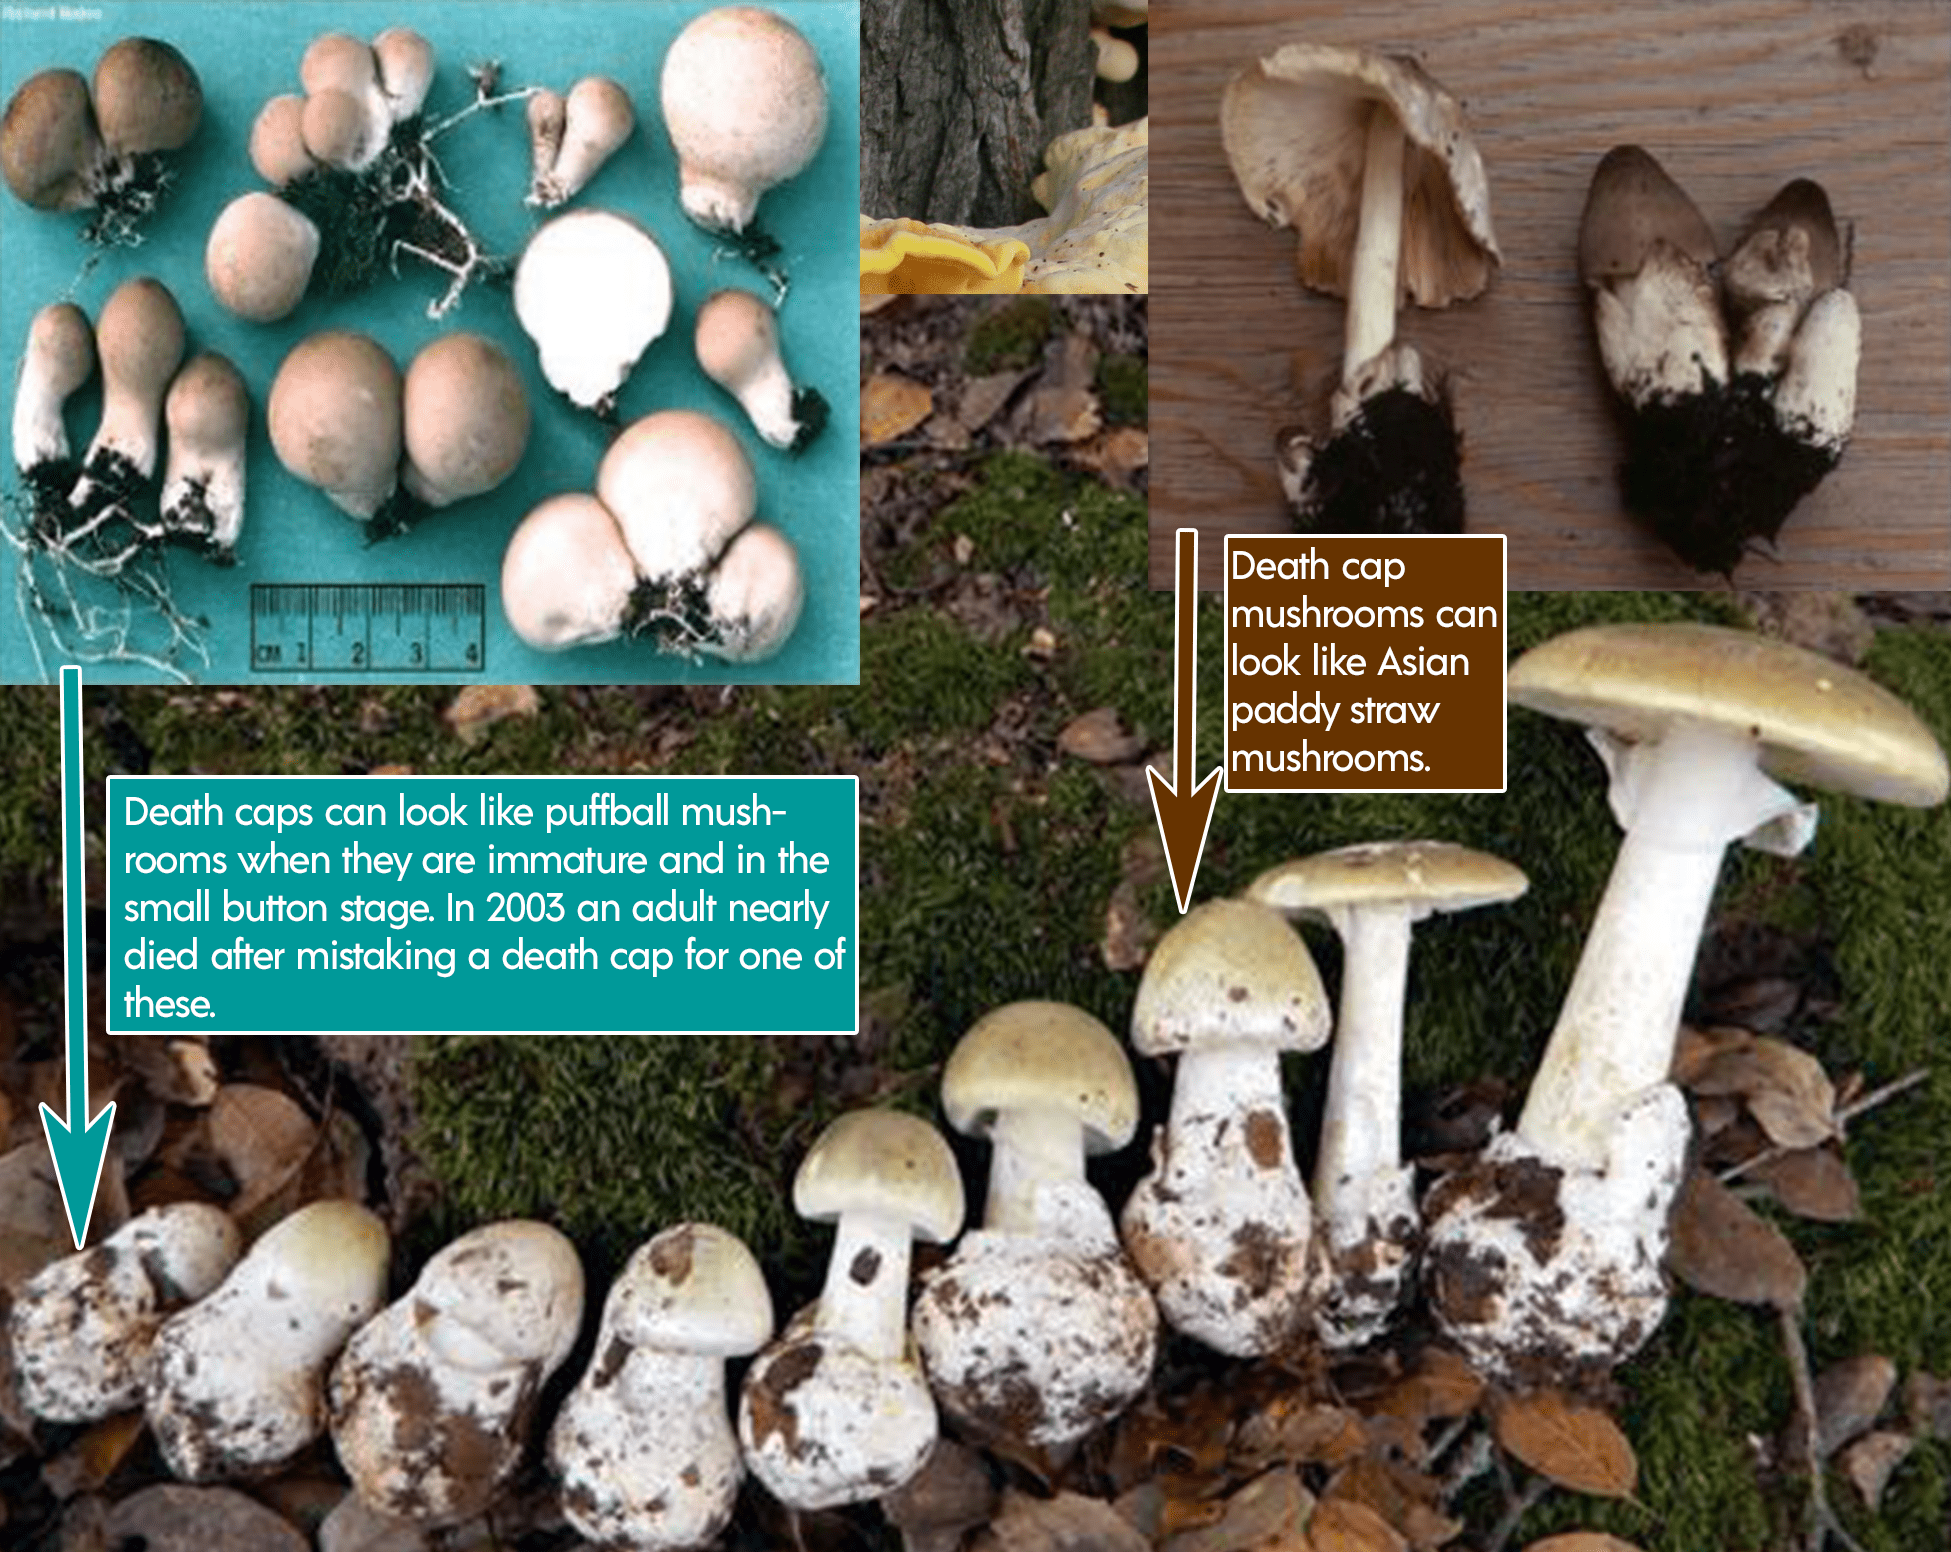 Look alike poisonous mushrooms